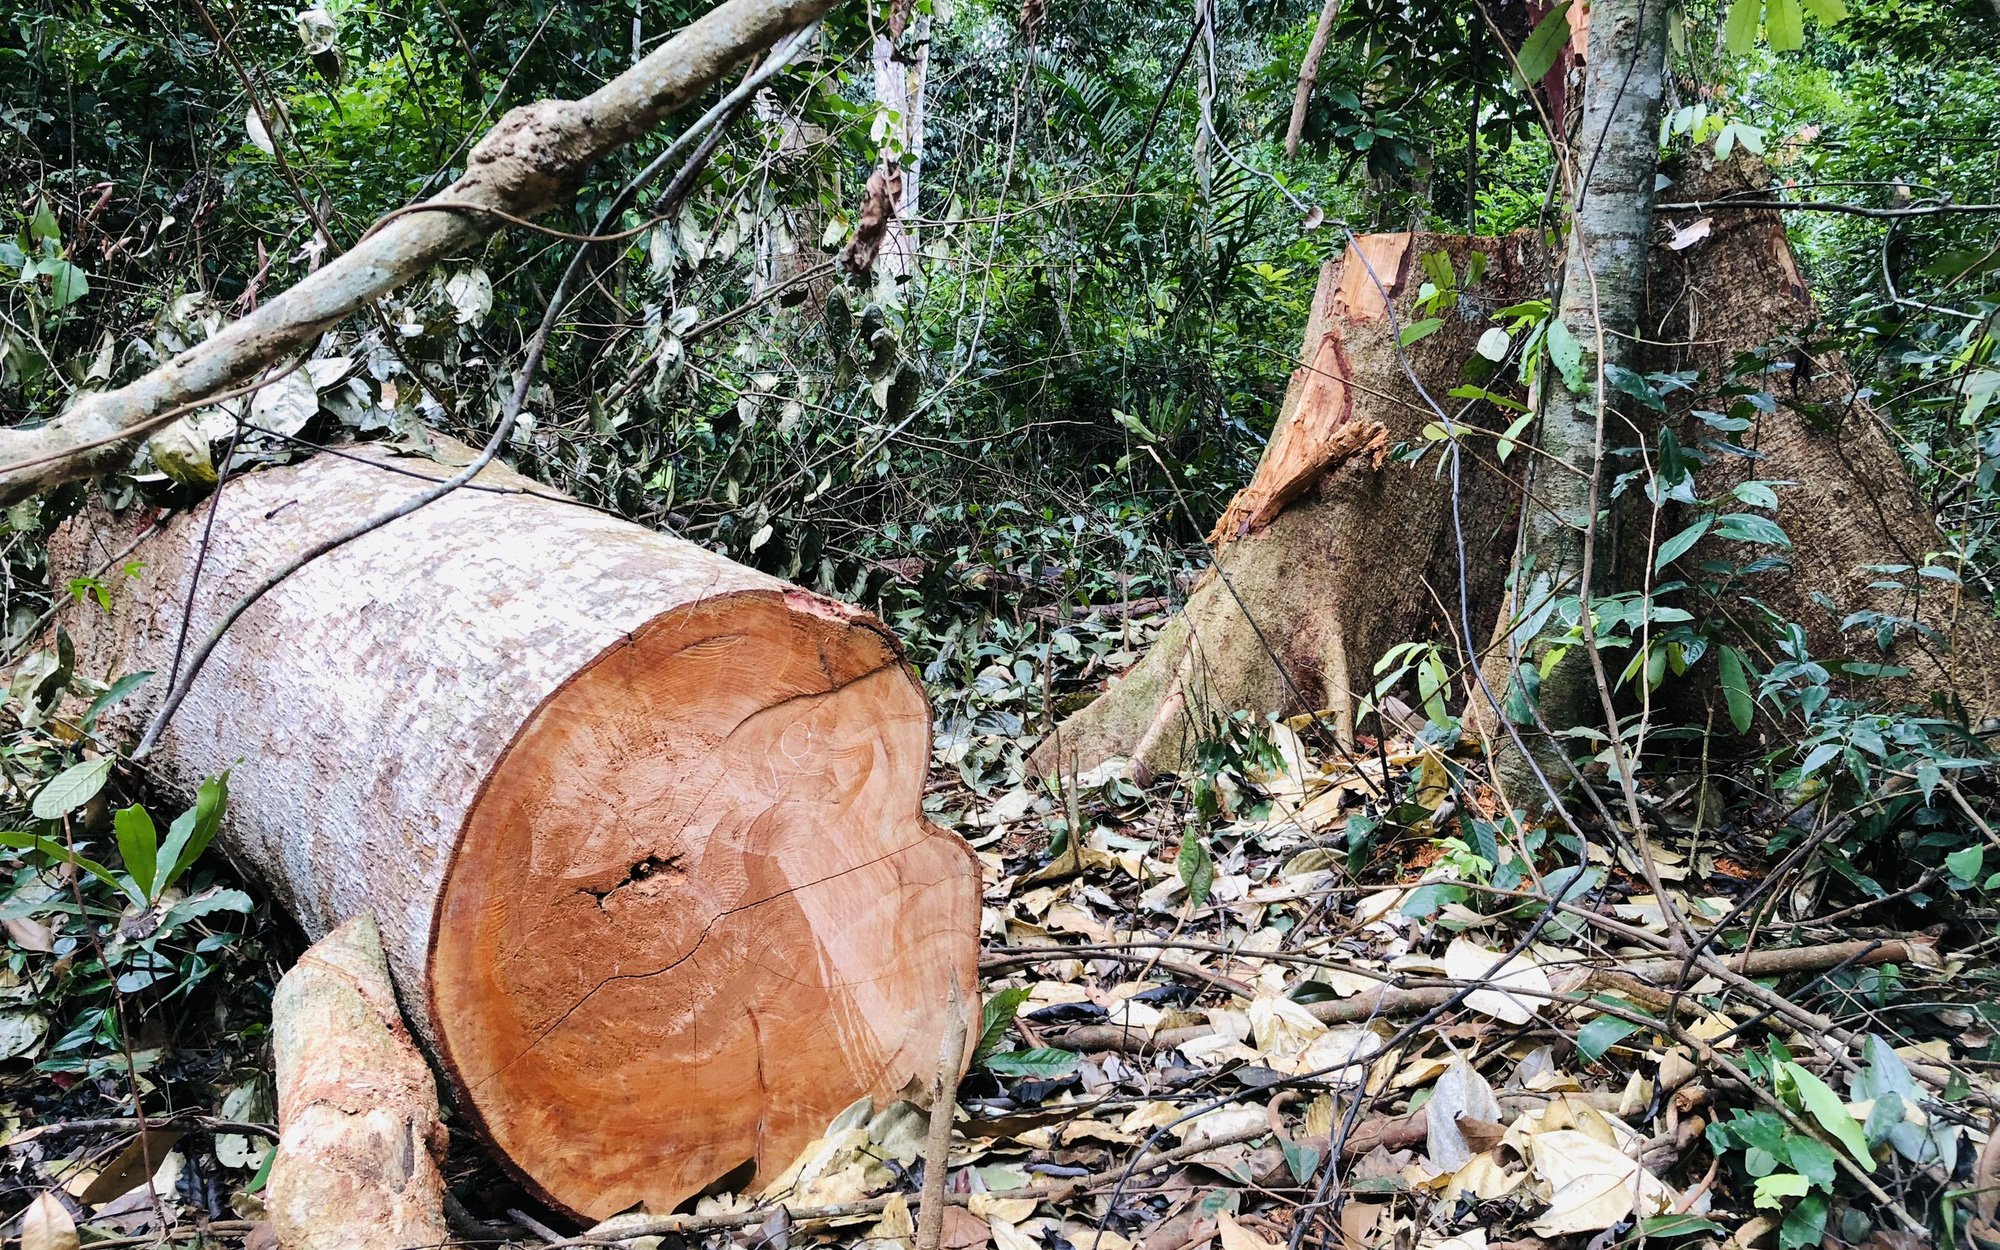 Vụ cây rừng bị cắt cả năm, chủ rừng mới biết: Thủ phạm là nhóm thanh niên địa phương